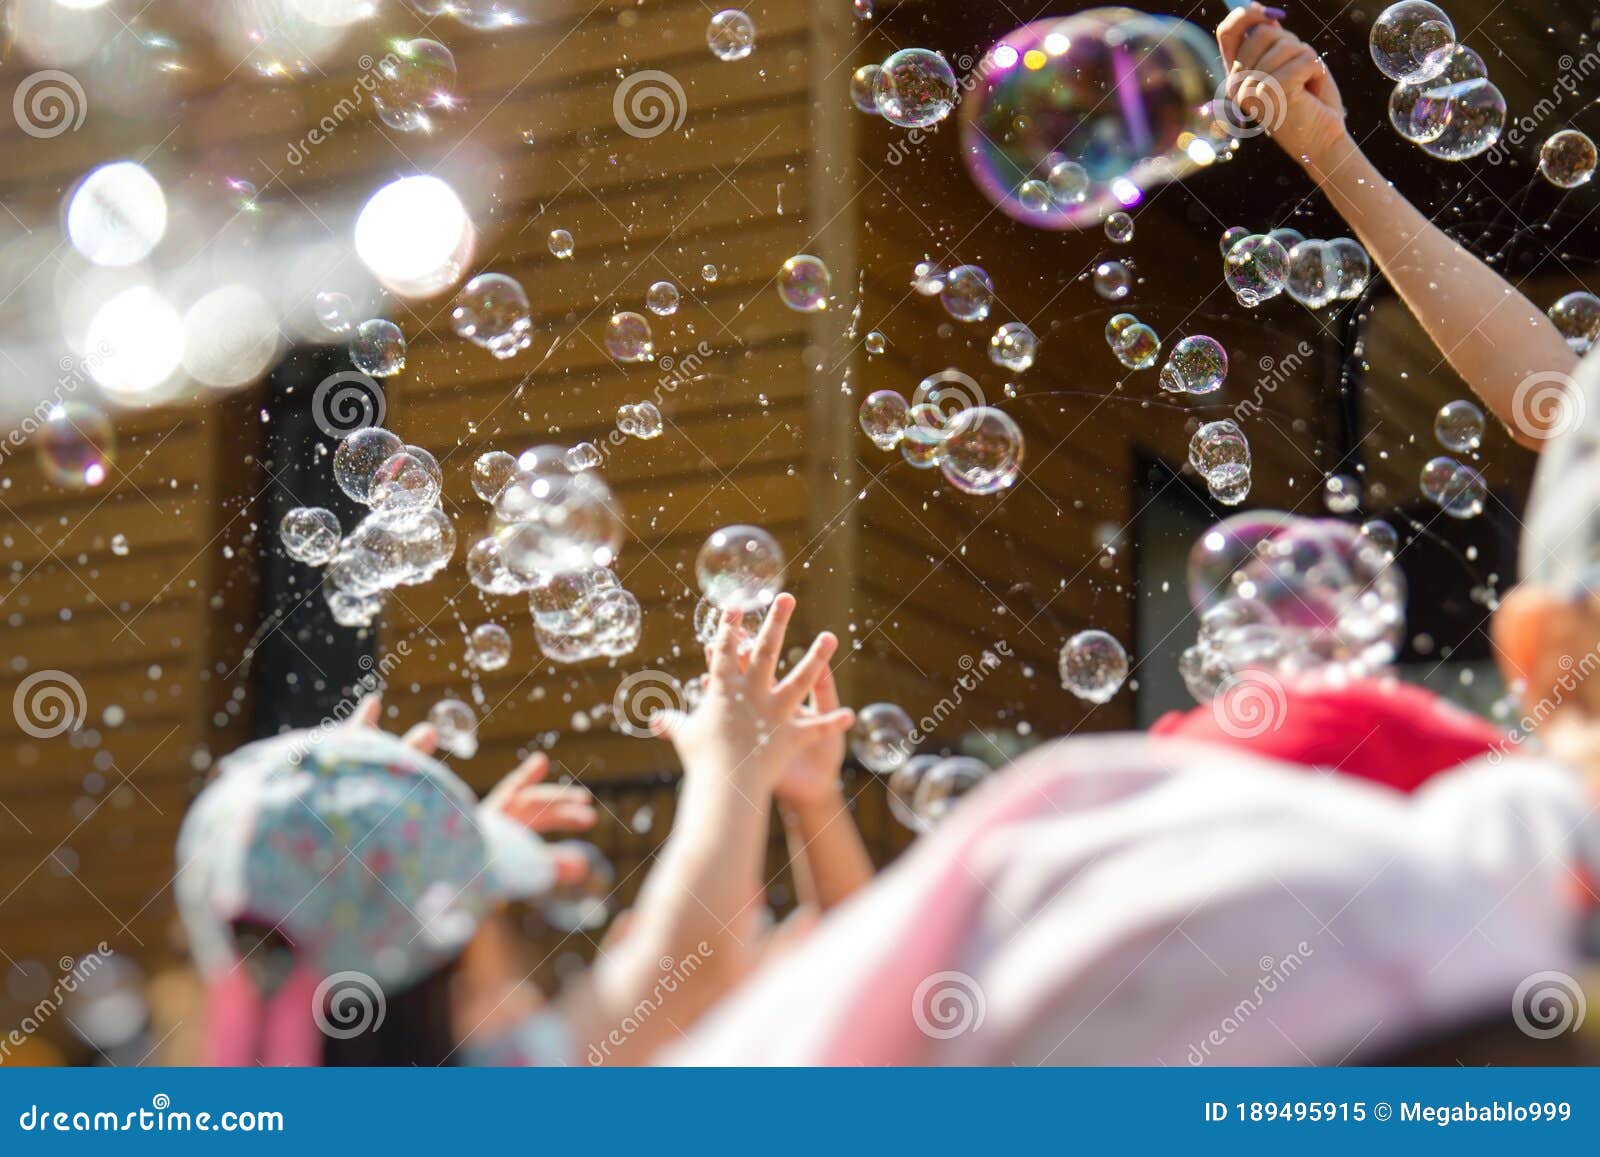 Seifenblasen Stock Blasen Schütteln Blasen-im Freien Tätigkeits Kinder CJ